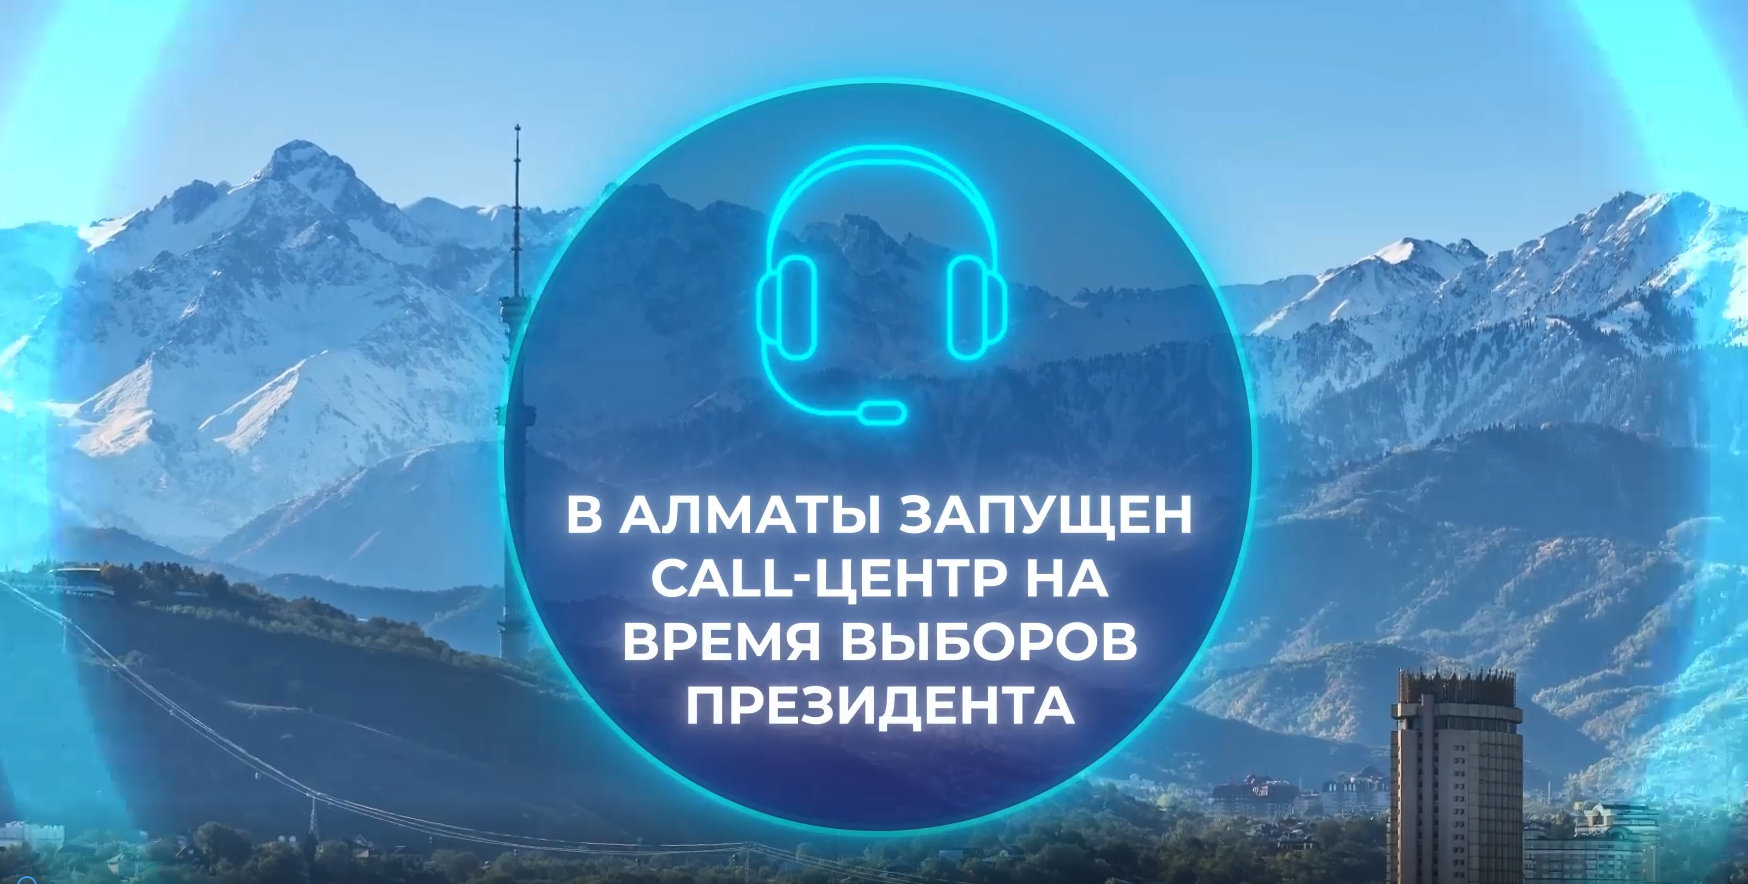 По городу Алматы запущен Call-центр с единым номером «1315»